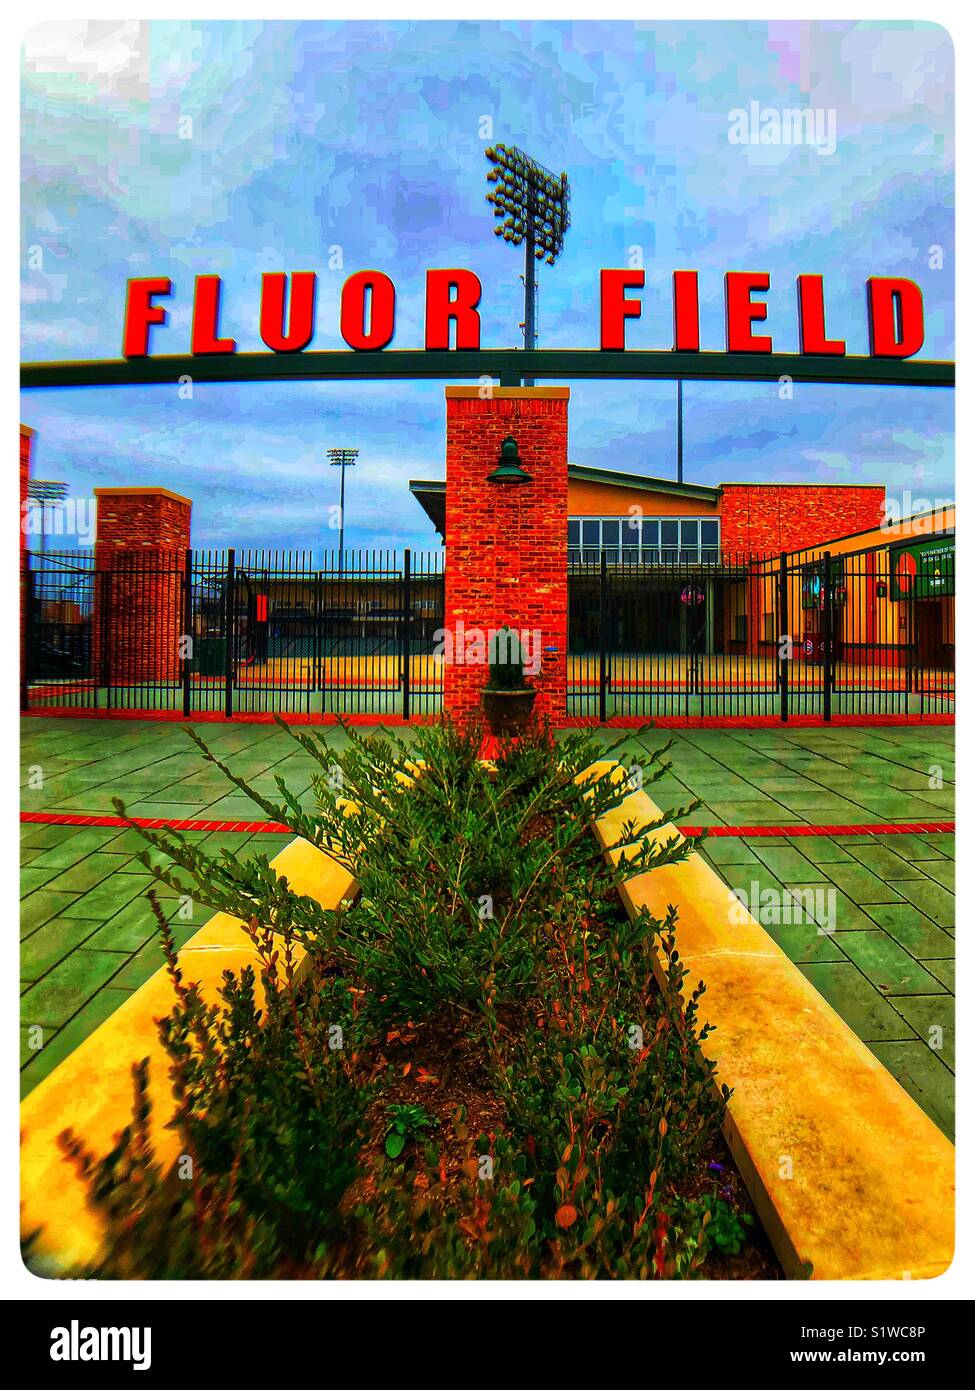 Fluor baseball field in Greenville, SC Stock Photo Alamy